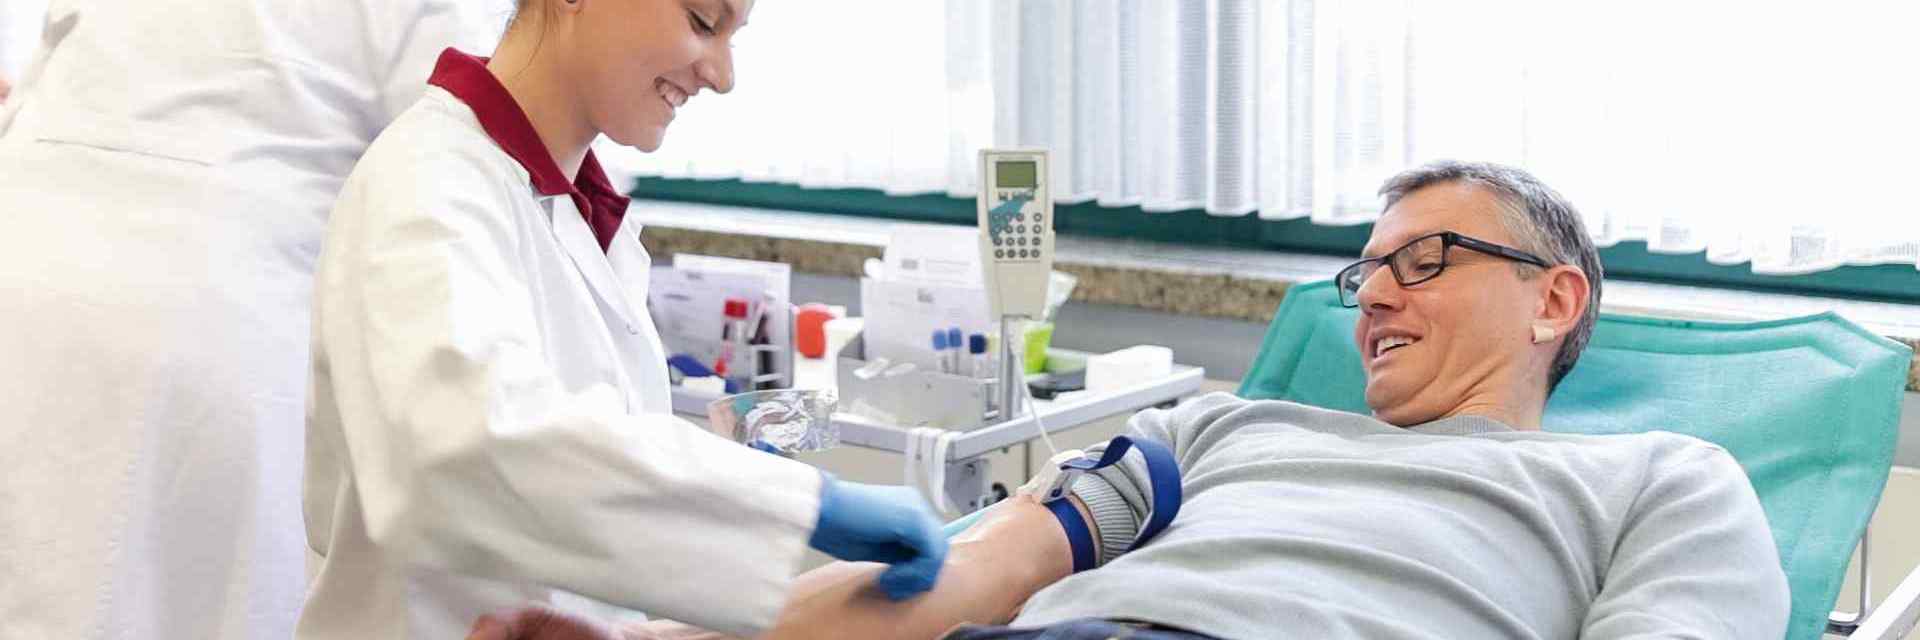 Das Bild zeigt einen Blutspender, während ihm Blut abgenommen wird.